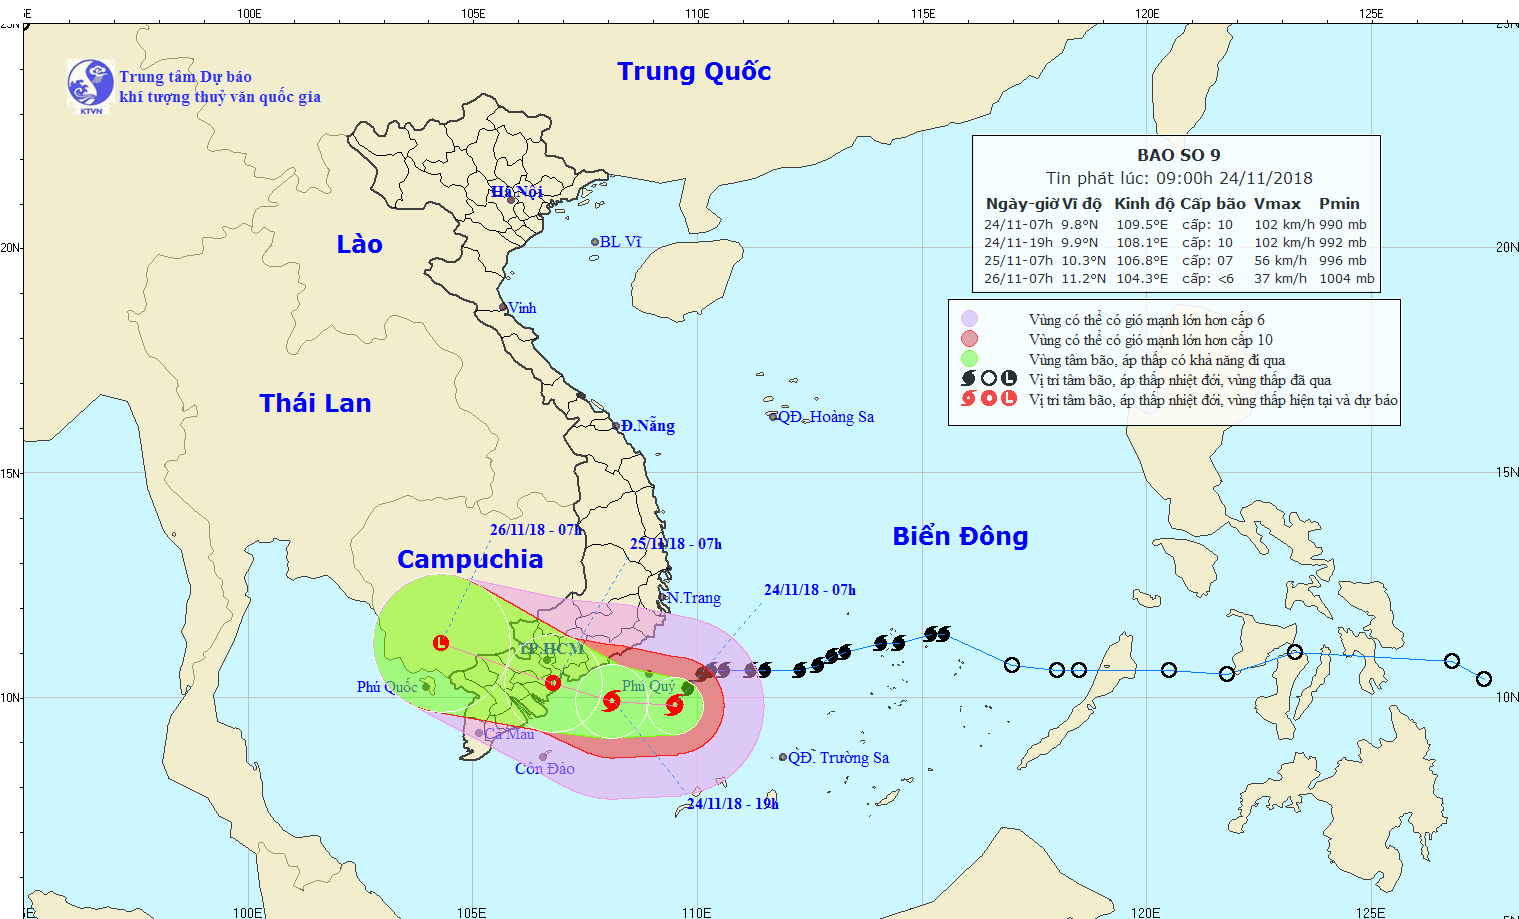 19h tối nay, bão số 9 Usagi sẽ nằm trên vùng biển các tỉnh từ Bình Thuận đến Bến Tre, cảnh báo mưa rất to - Ảnh 1.